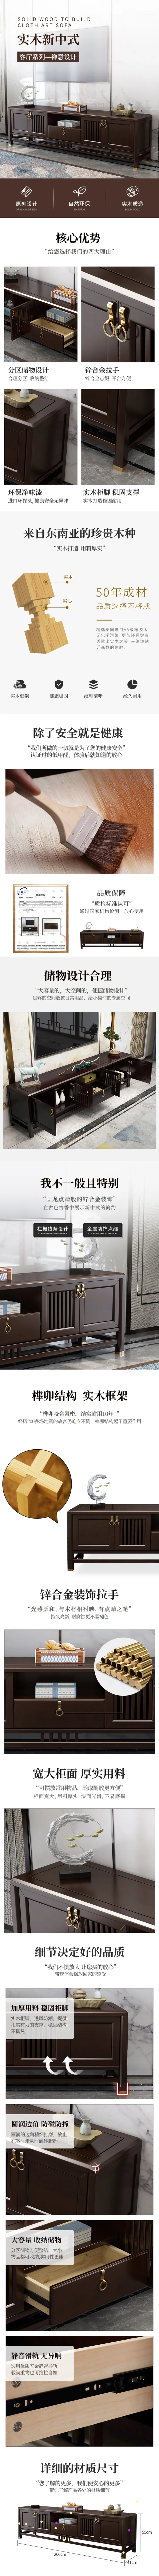 华松居 新中式实木电视柜客厅组合柜家具功能储物柜 X5303-B(图1)